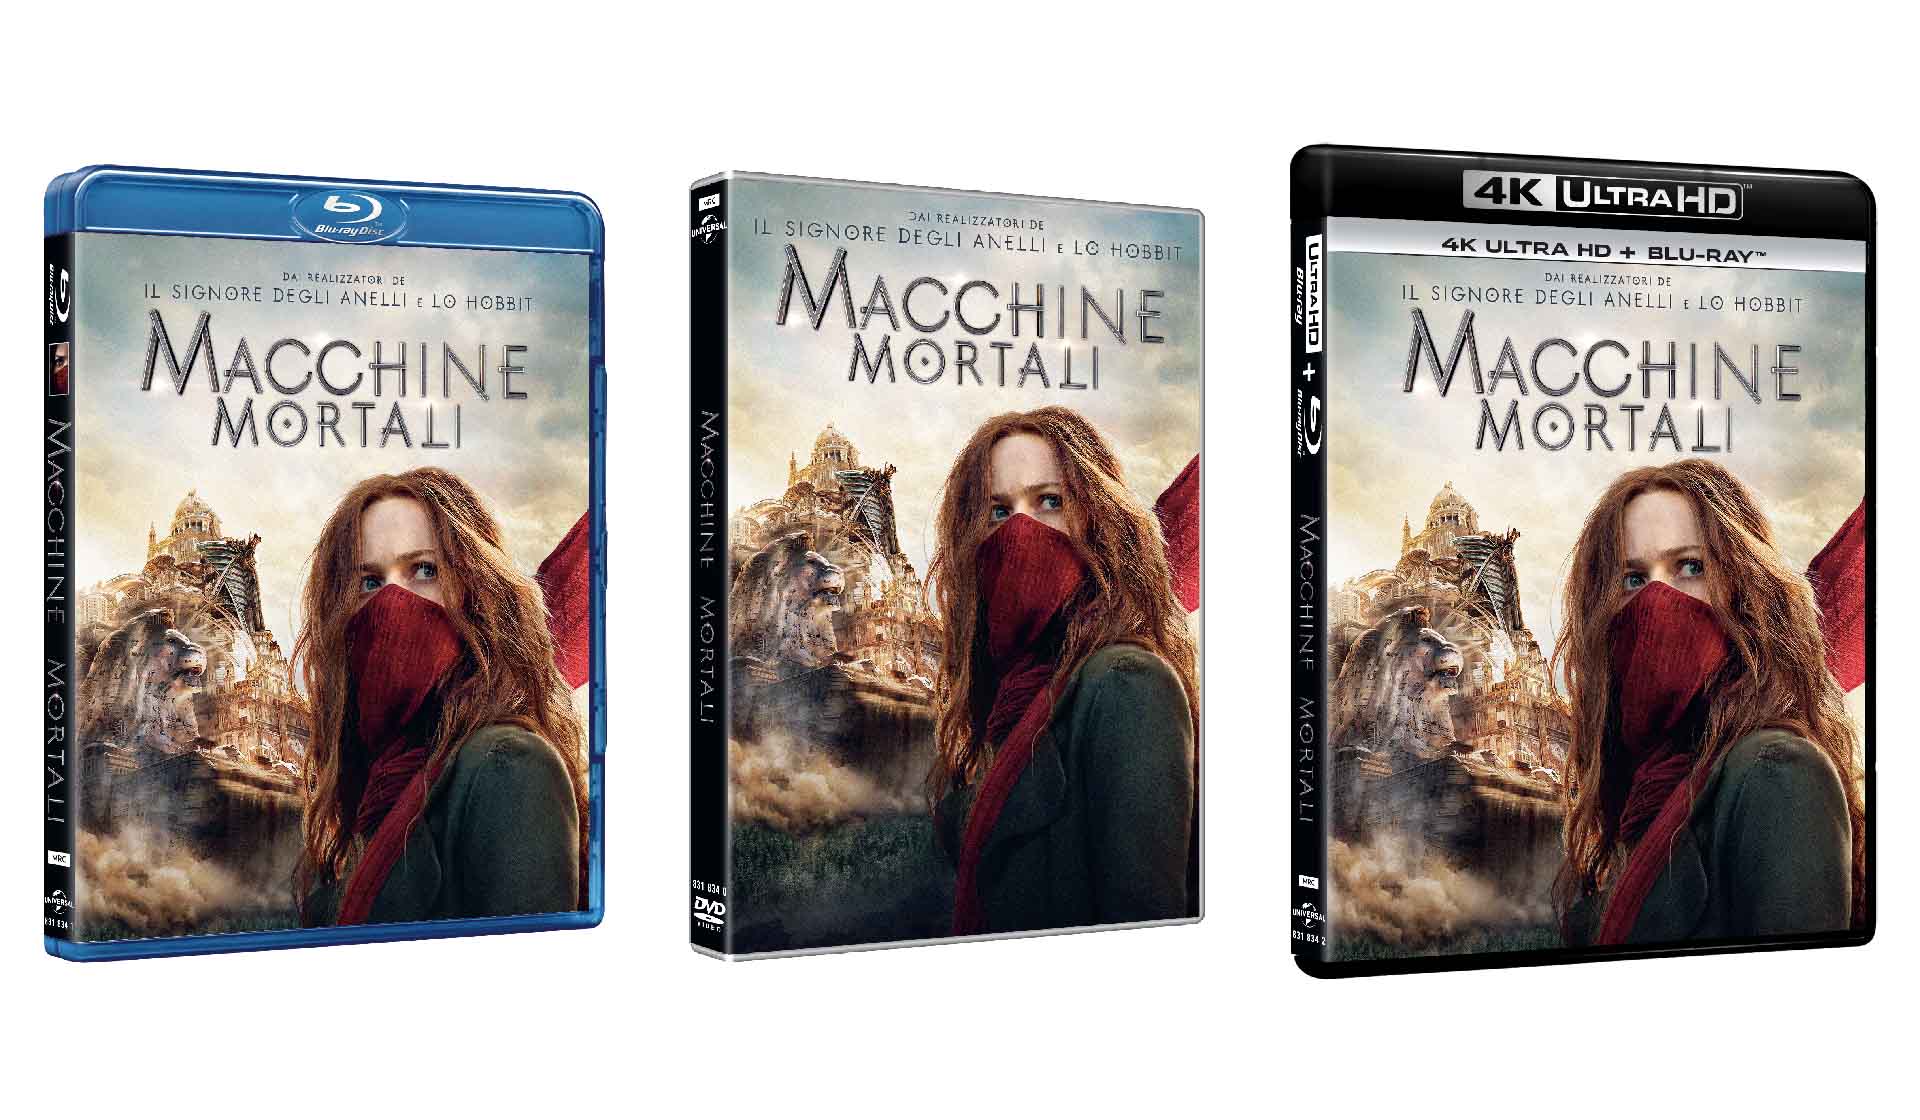 Macchine Mortali: il film arriva in Home Video il 27 marzo